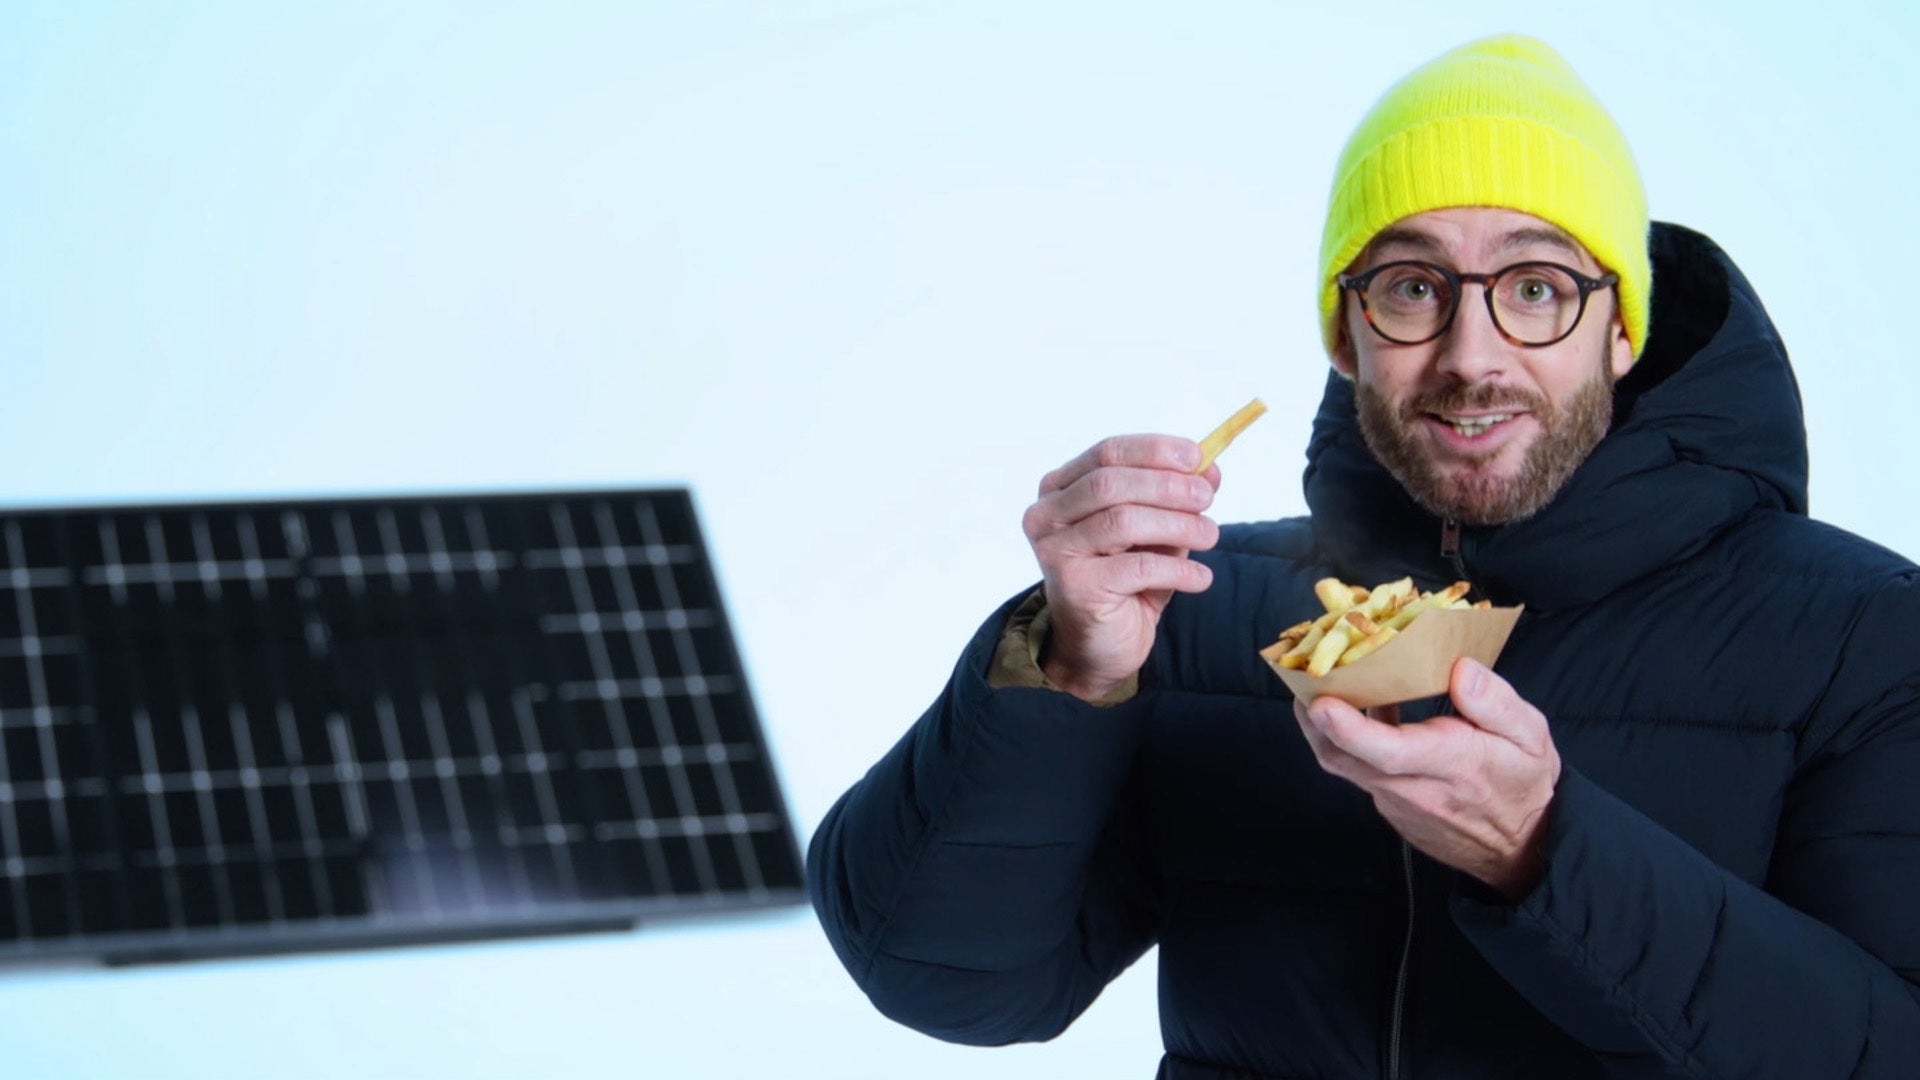 10 idées de supports à panneau solaire DIY - tinktube